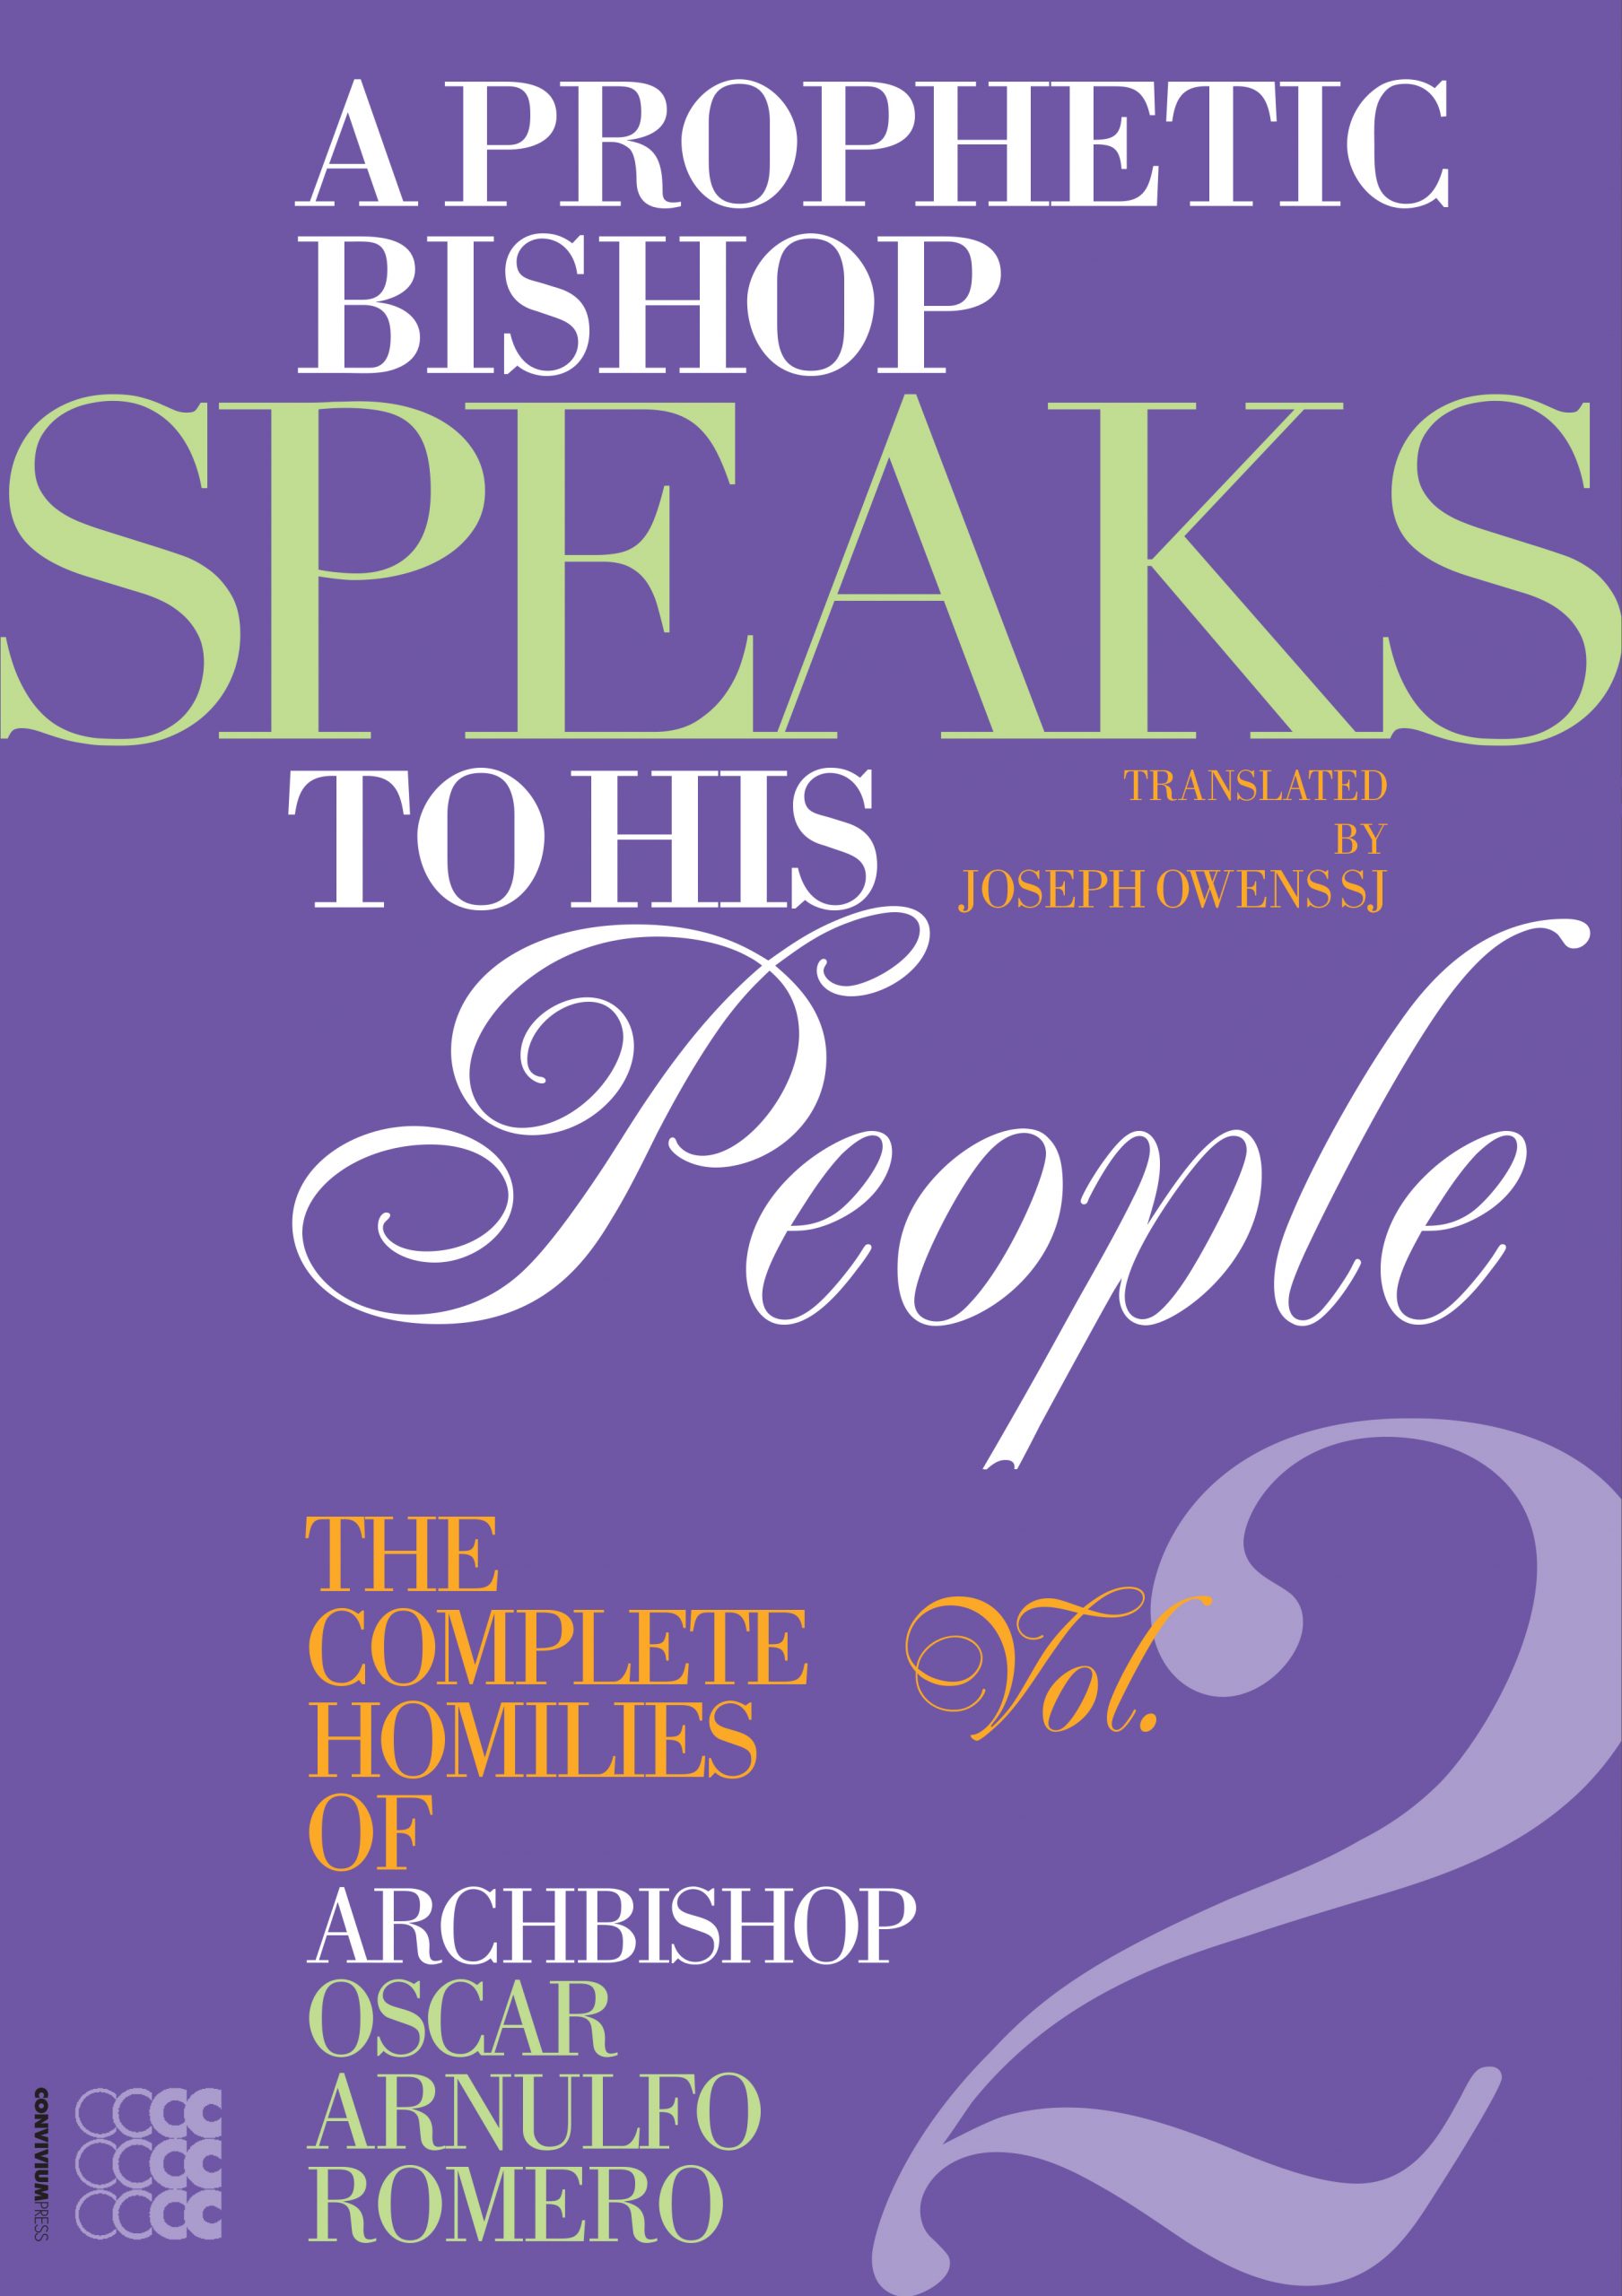 A Prophetic Bishop Speaks to his People 2